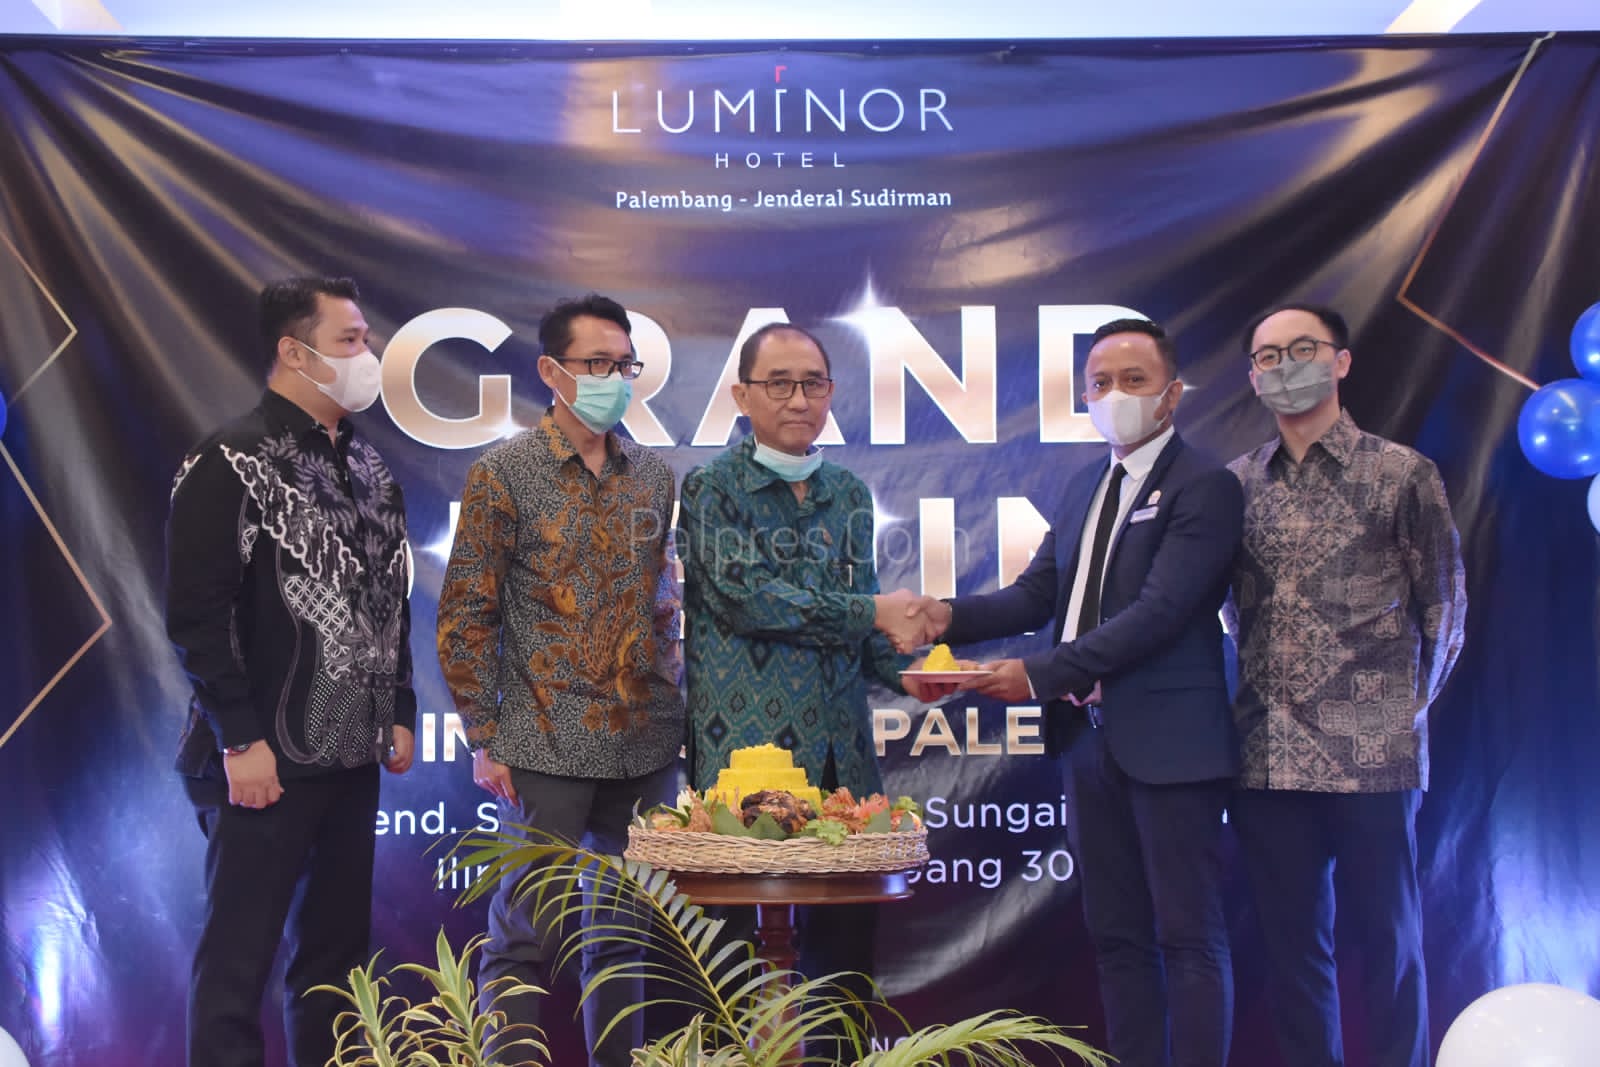    Tawarkan Fasilitas Serba Lengkap, Luminor Hotel Hadir di Palembang